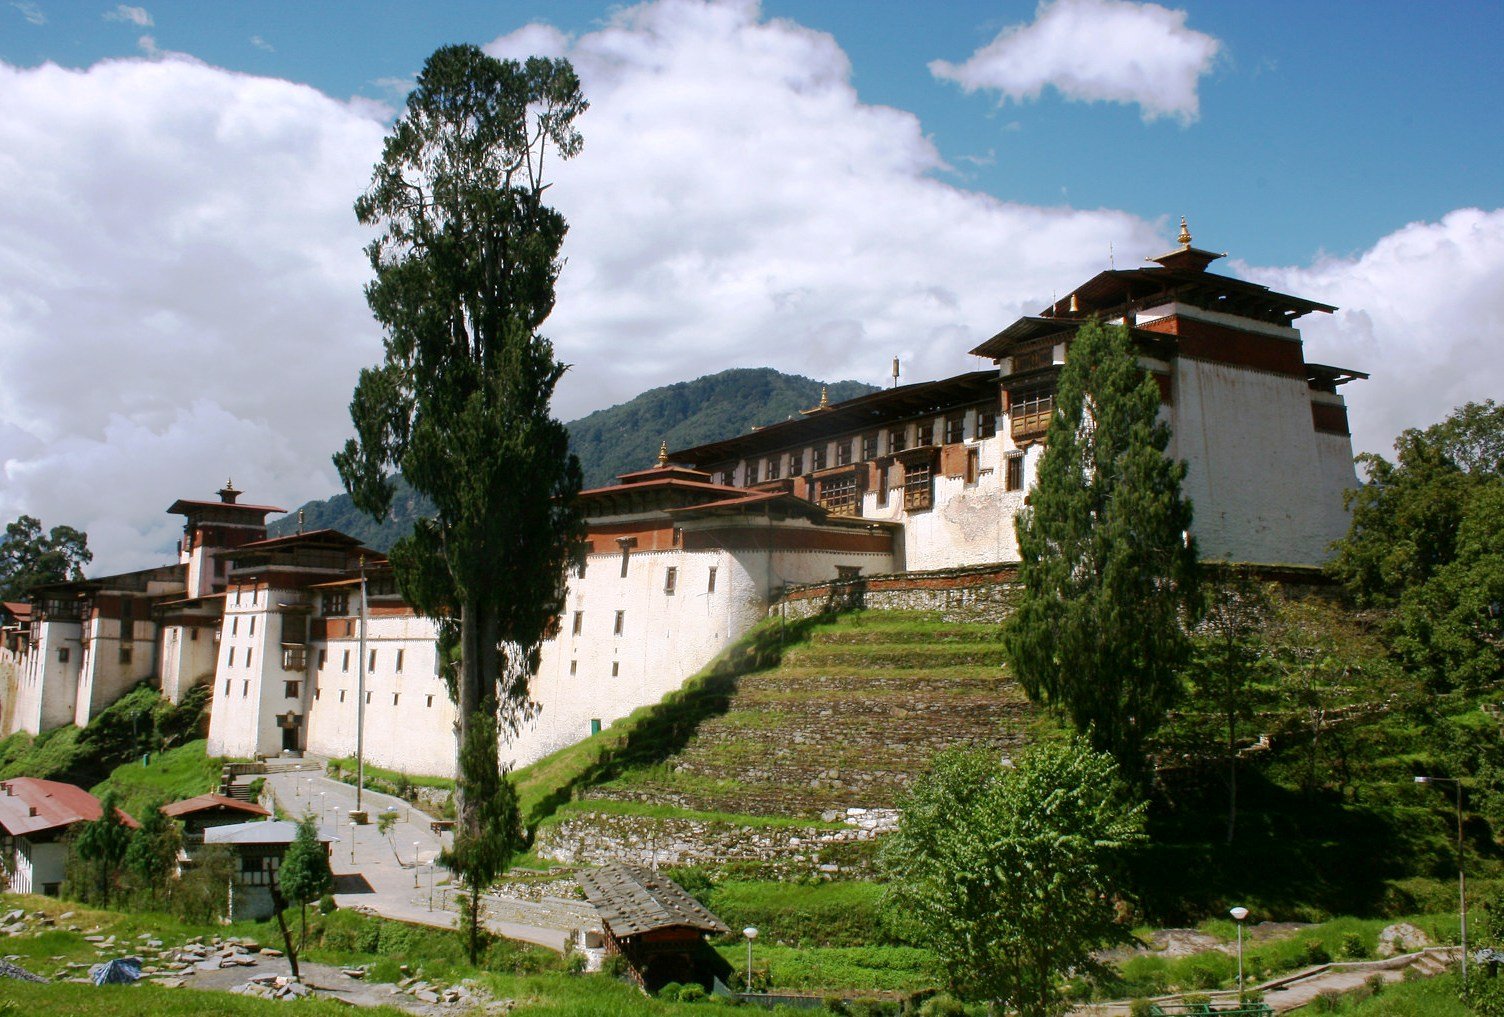 Bhutan Travel 8 days : Paro Thimphu Trongsa Tour